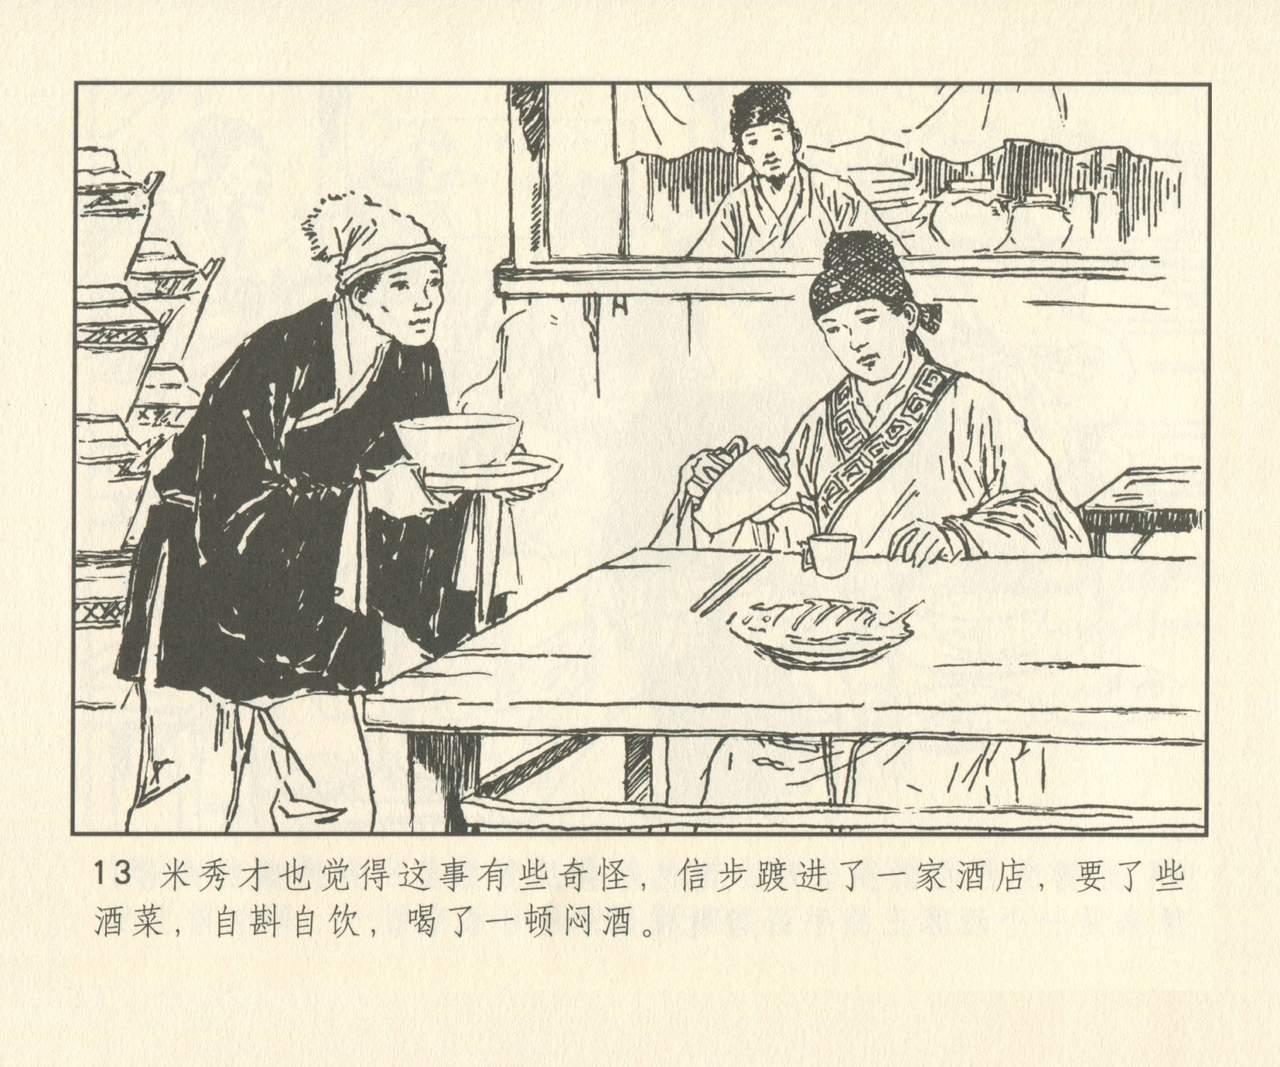 聊斋志异 张玮等绘 天津人民美术出版社 卷二十一 ~ 三十 141